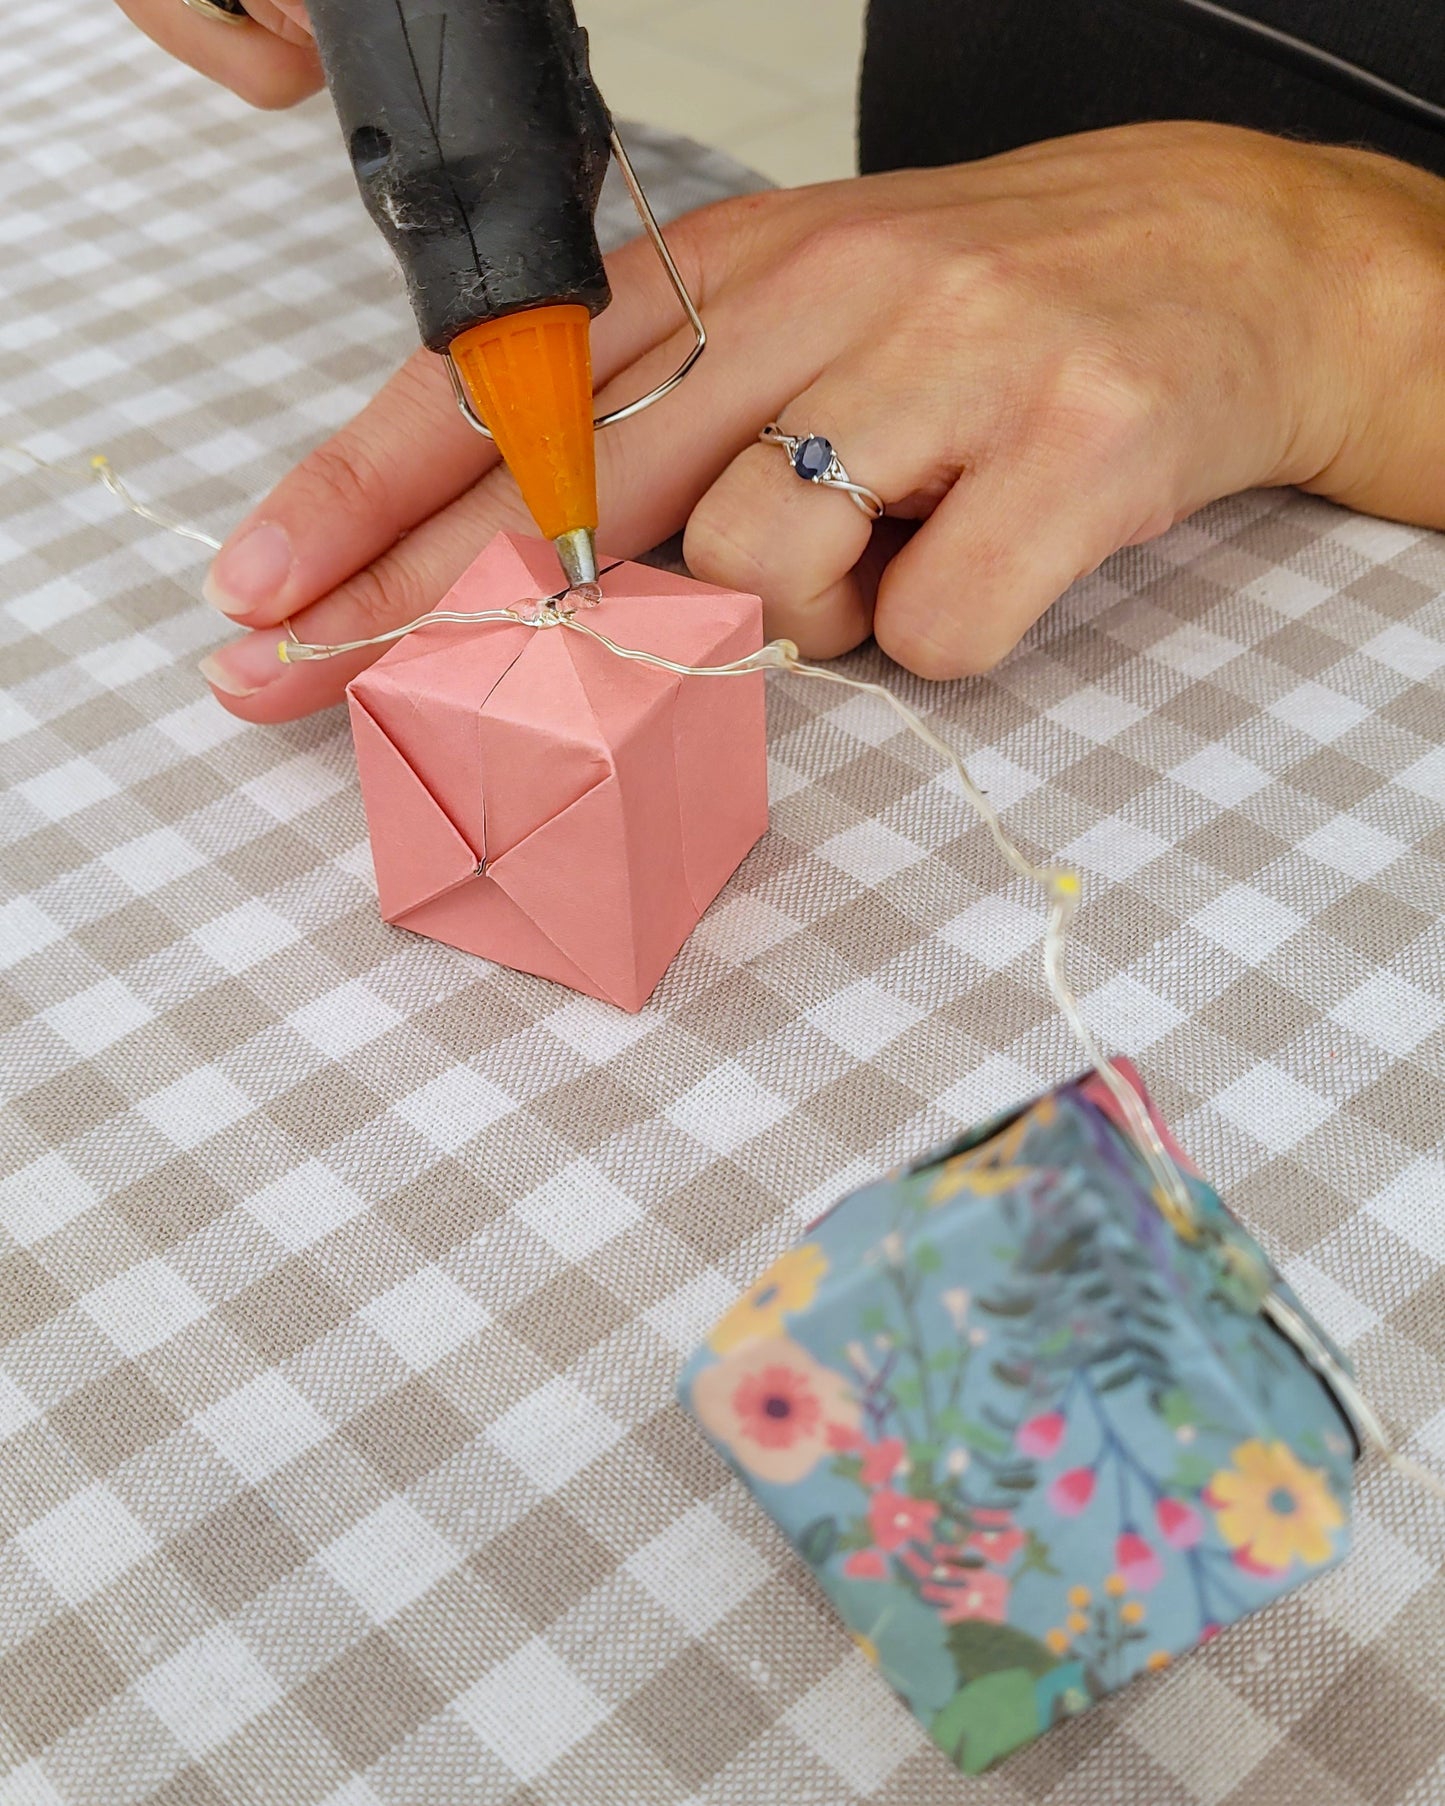 Workshop - Creation of a light garland under a glass bell